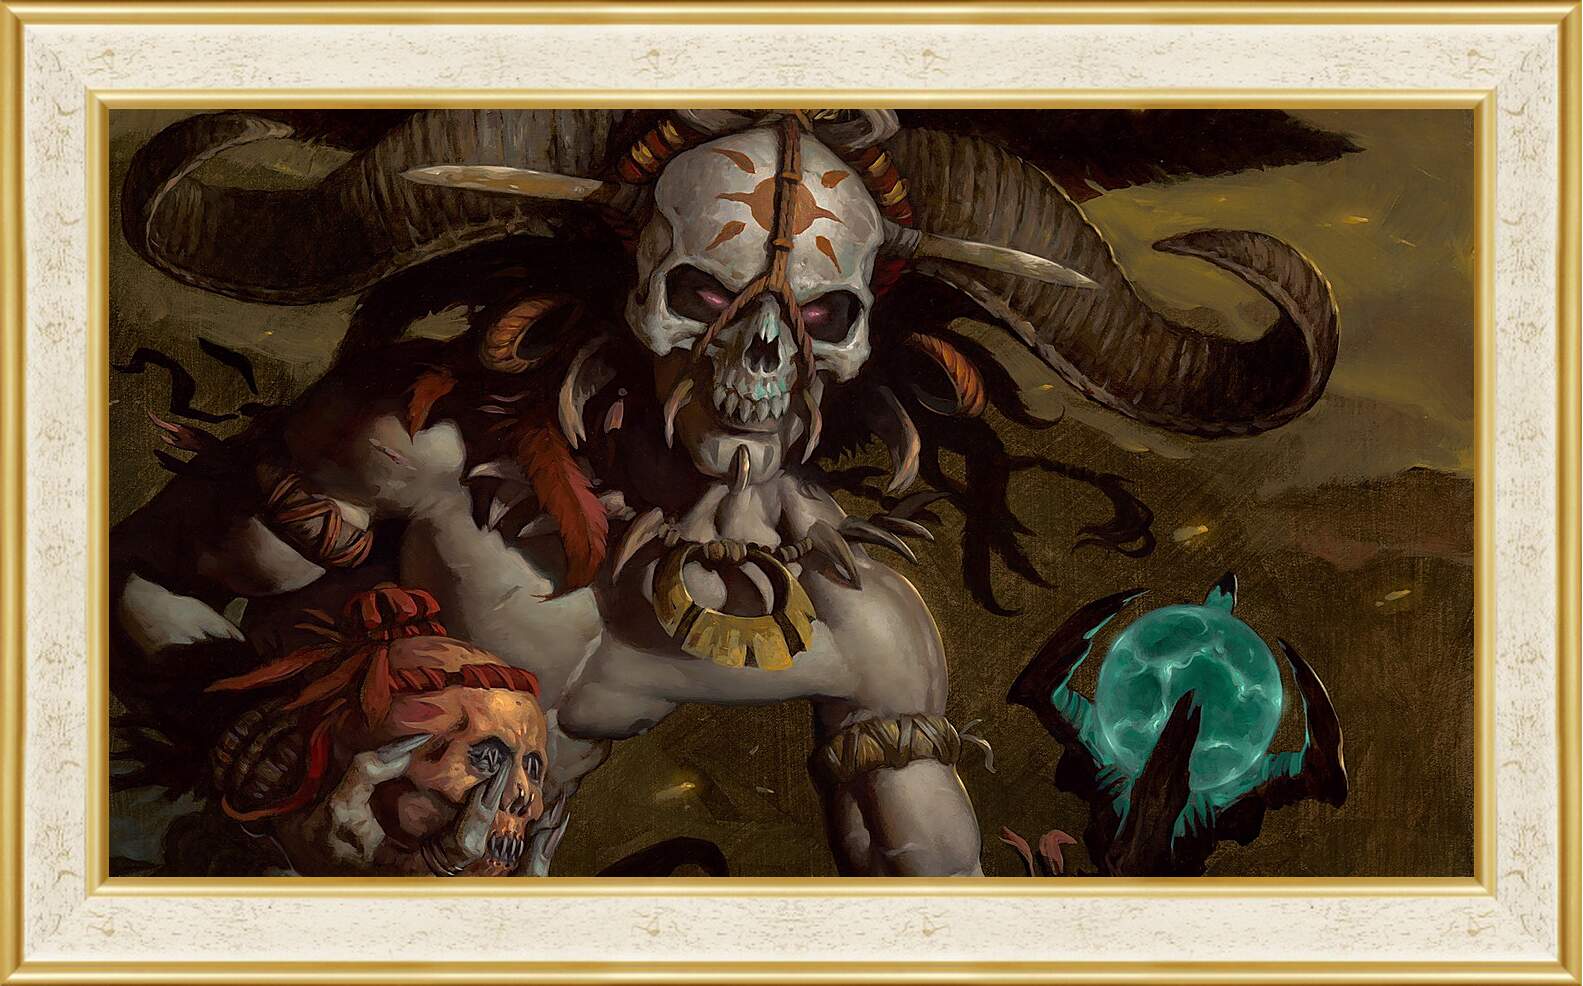 Картина в раме - Diablo III
